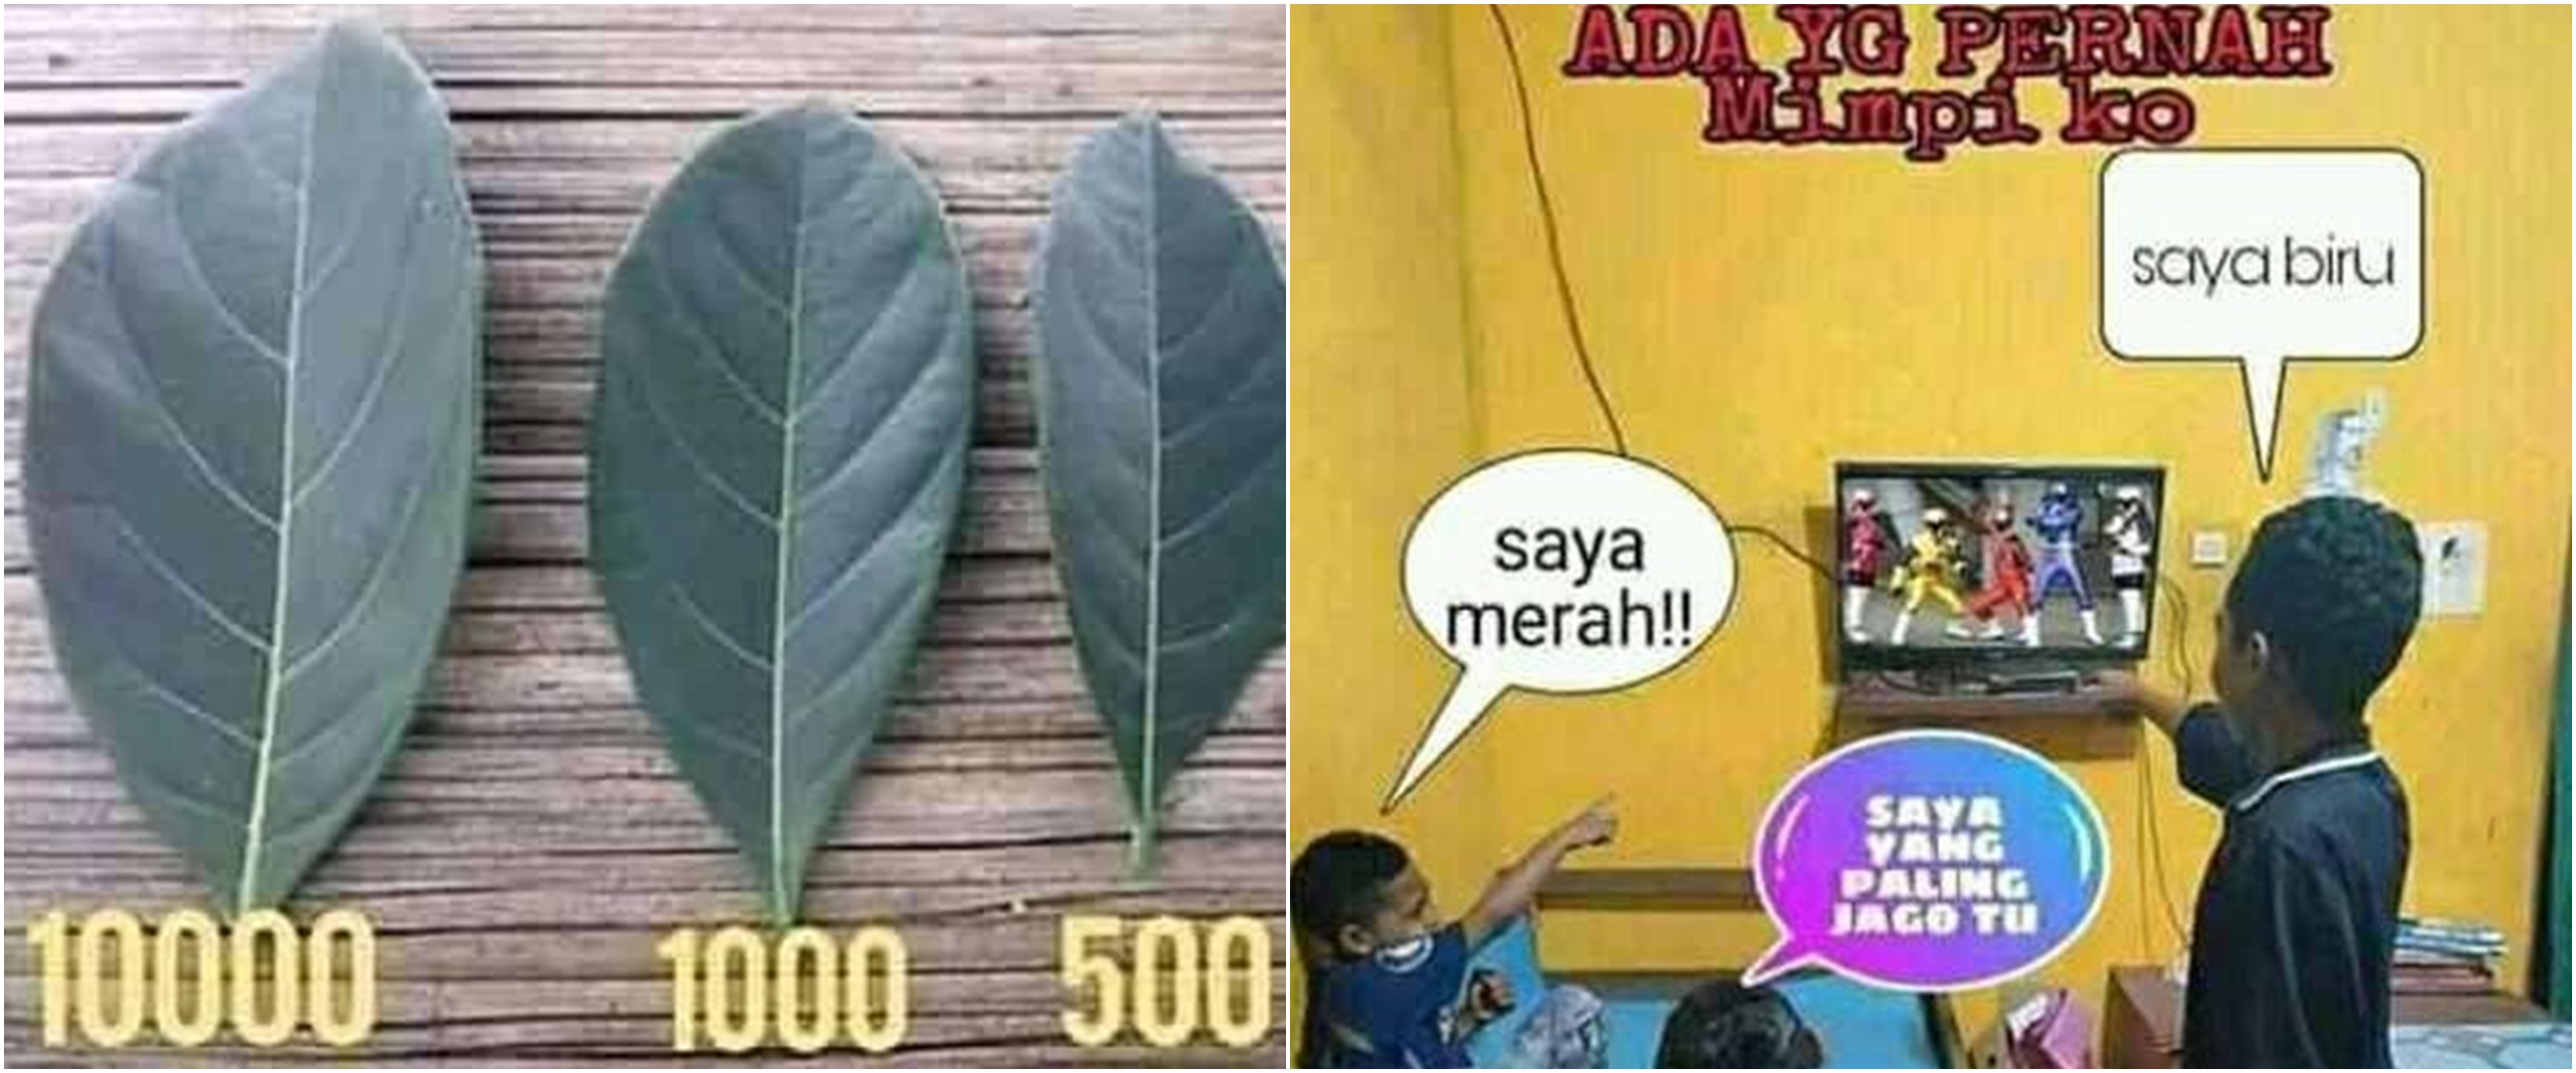 Meme Lucu Indonesia Brilionet